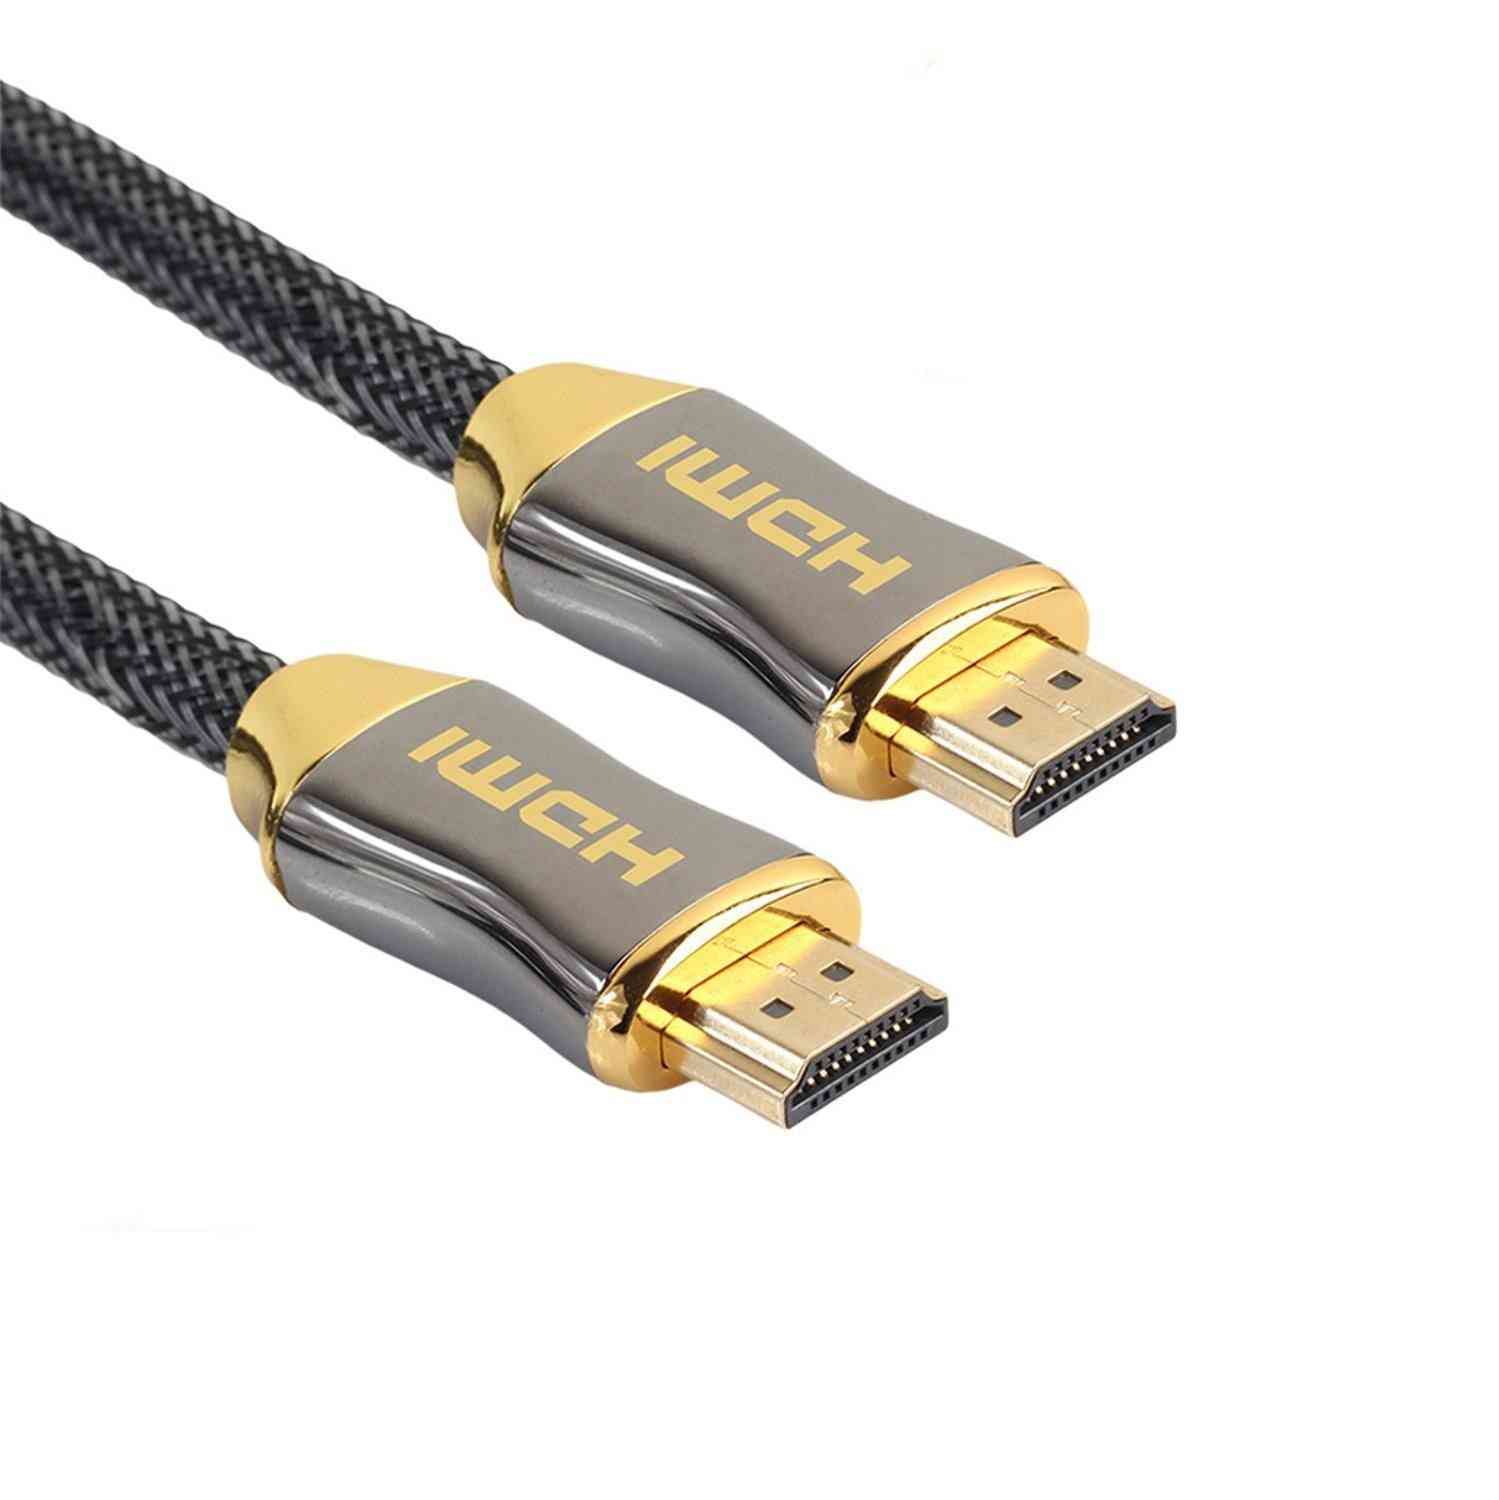 1m 2m 3m 5m 10m 15m 4k 60hz cable hdmi a hdmi cable de conexión dorado de alta velocidad 2.0 cable para uhd fhd 3d xbox ps3 ps4 tv - pvc modelo clásico / 0.5m